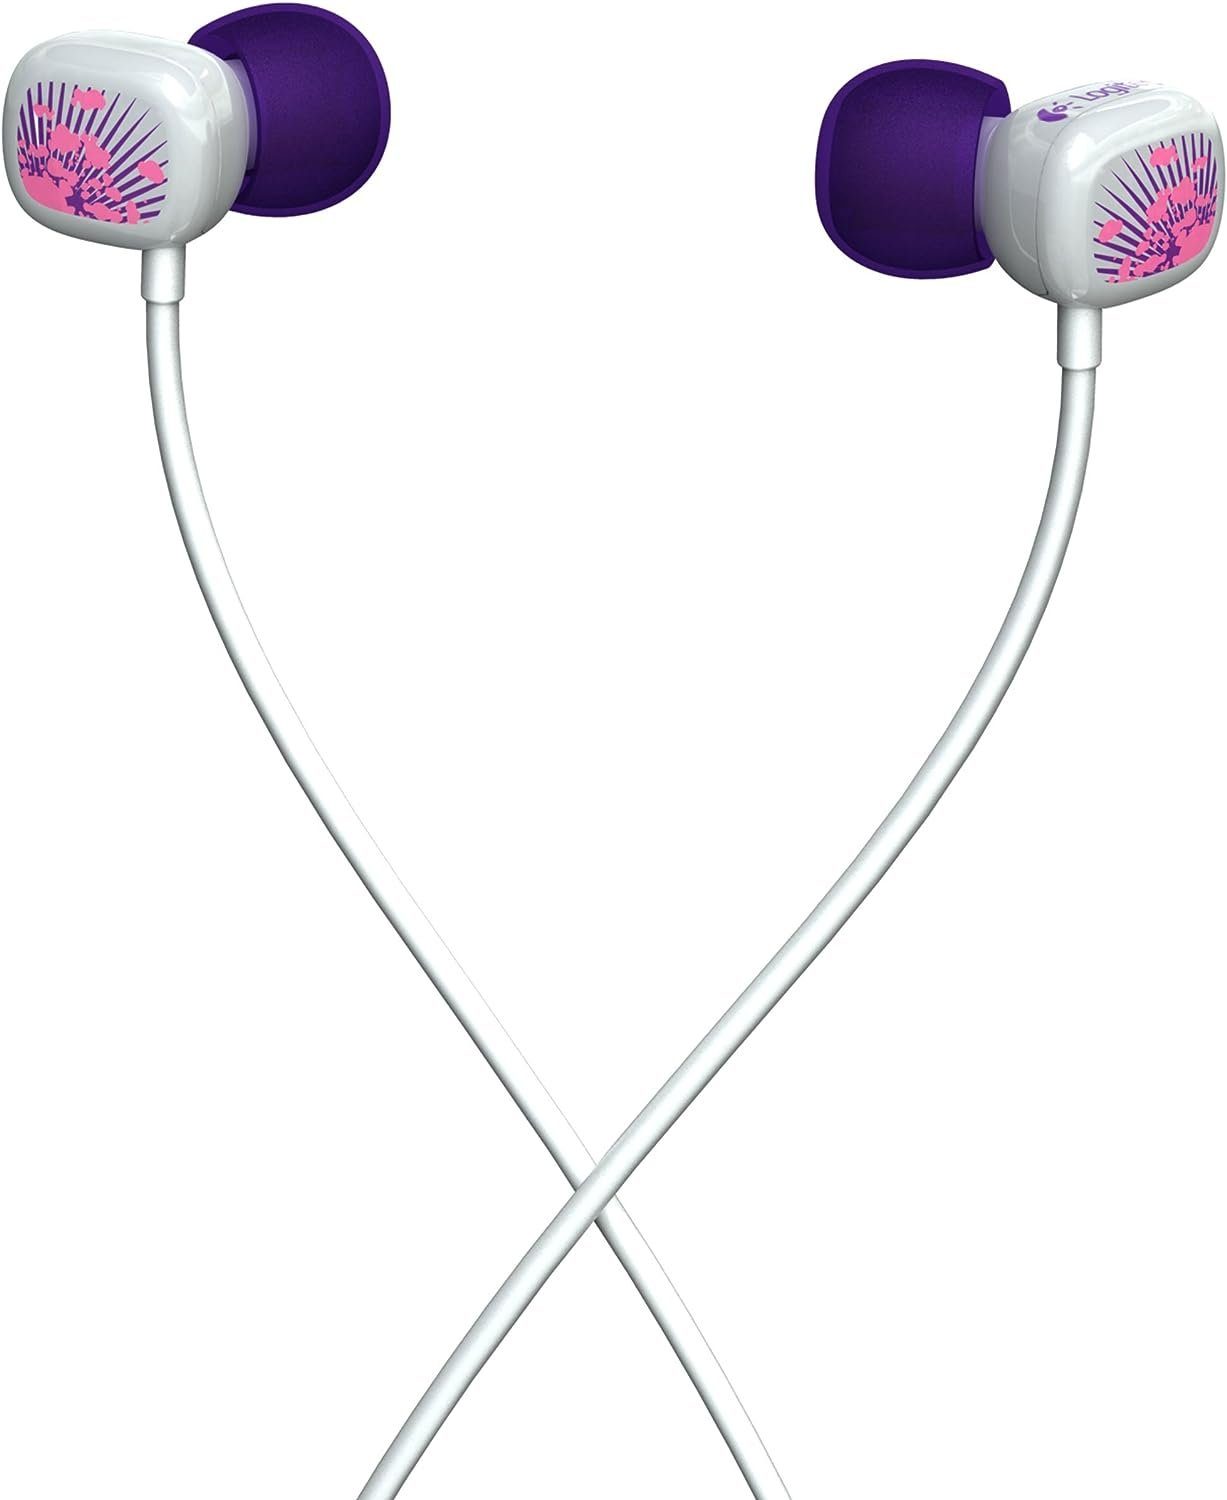 Logitech Ultimate Ears 100 In-Ear-Kopfhörer In-Ear-Kopfhörer Lila Splatter